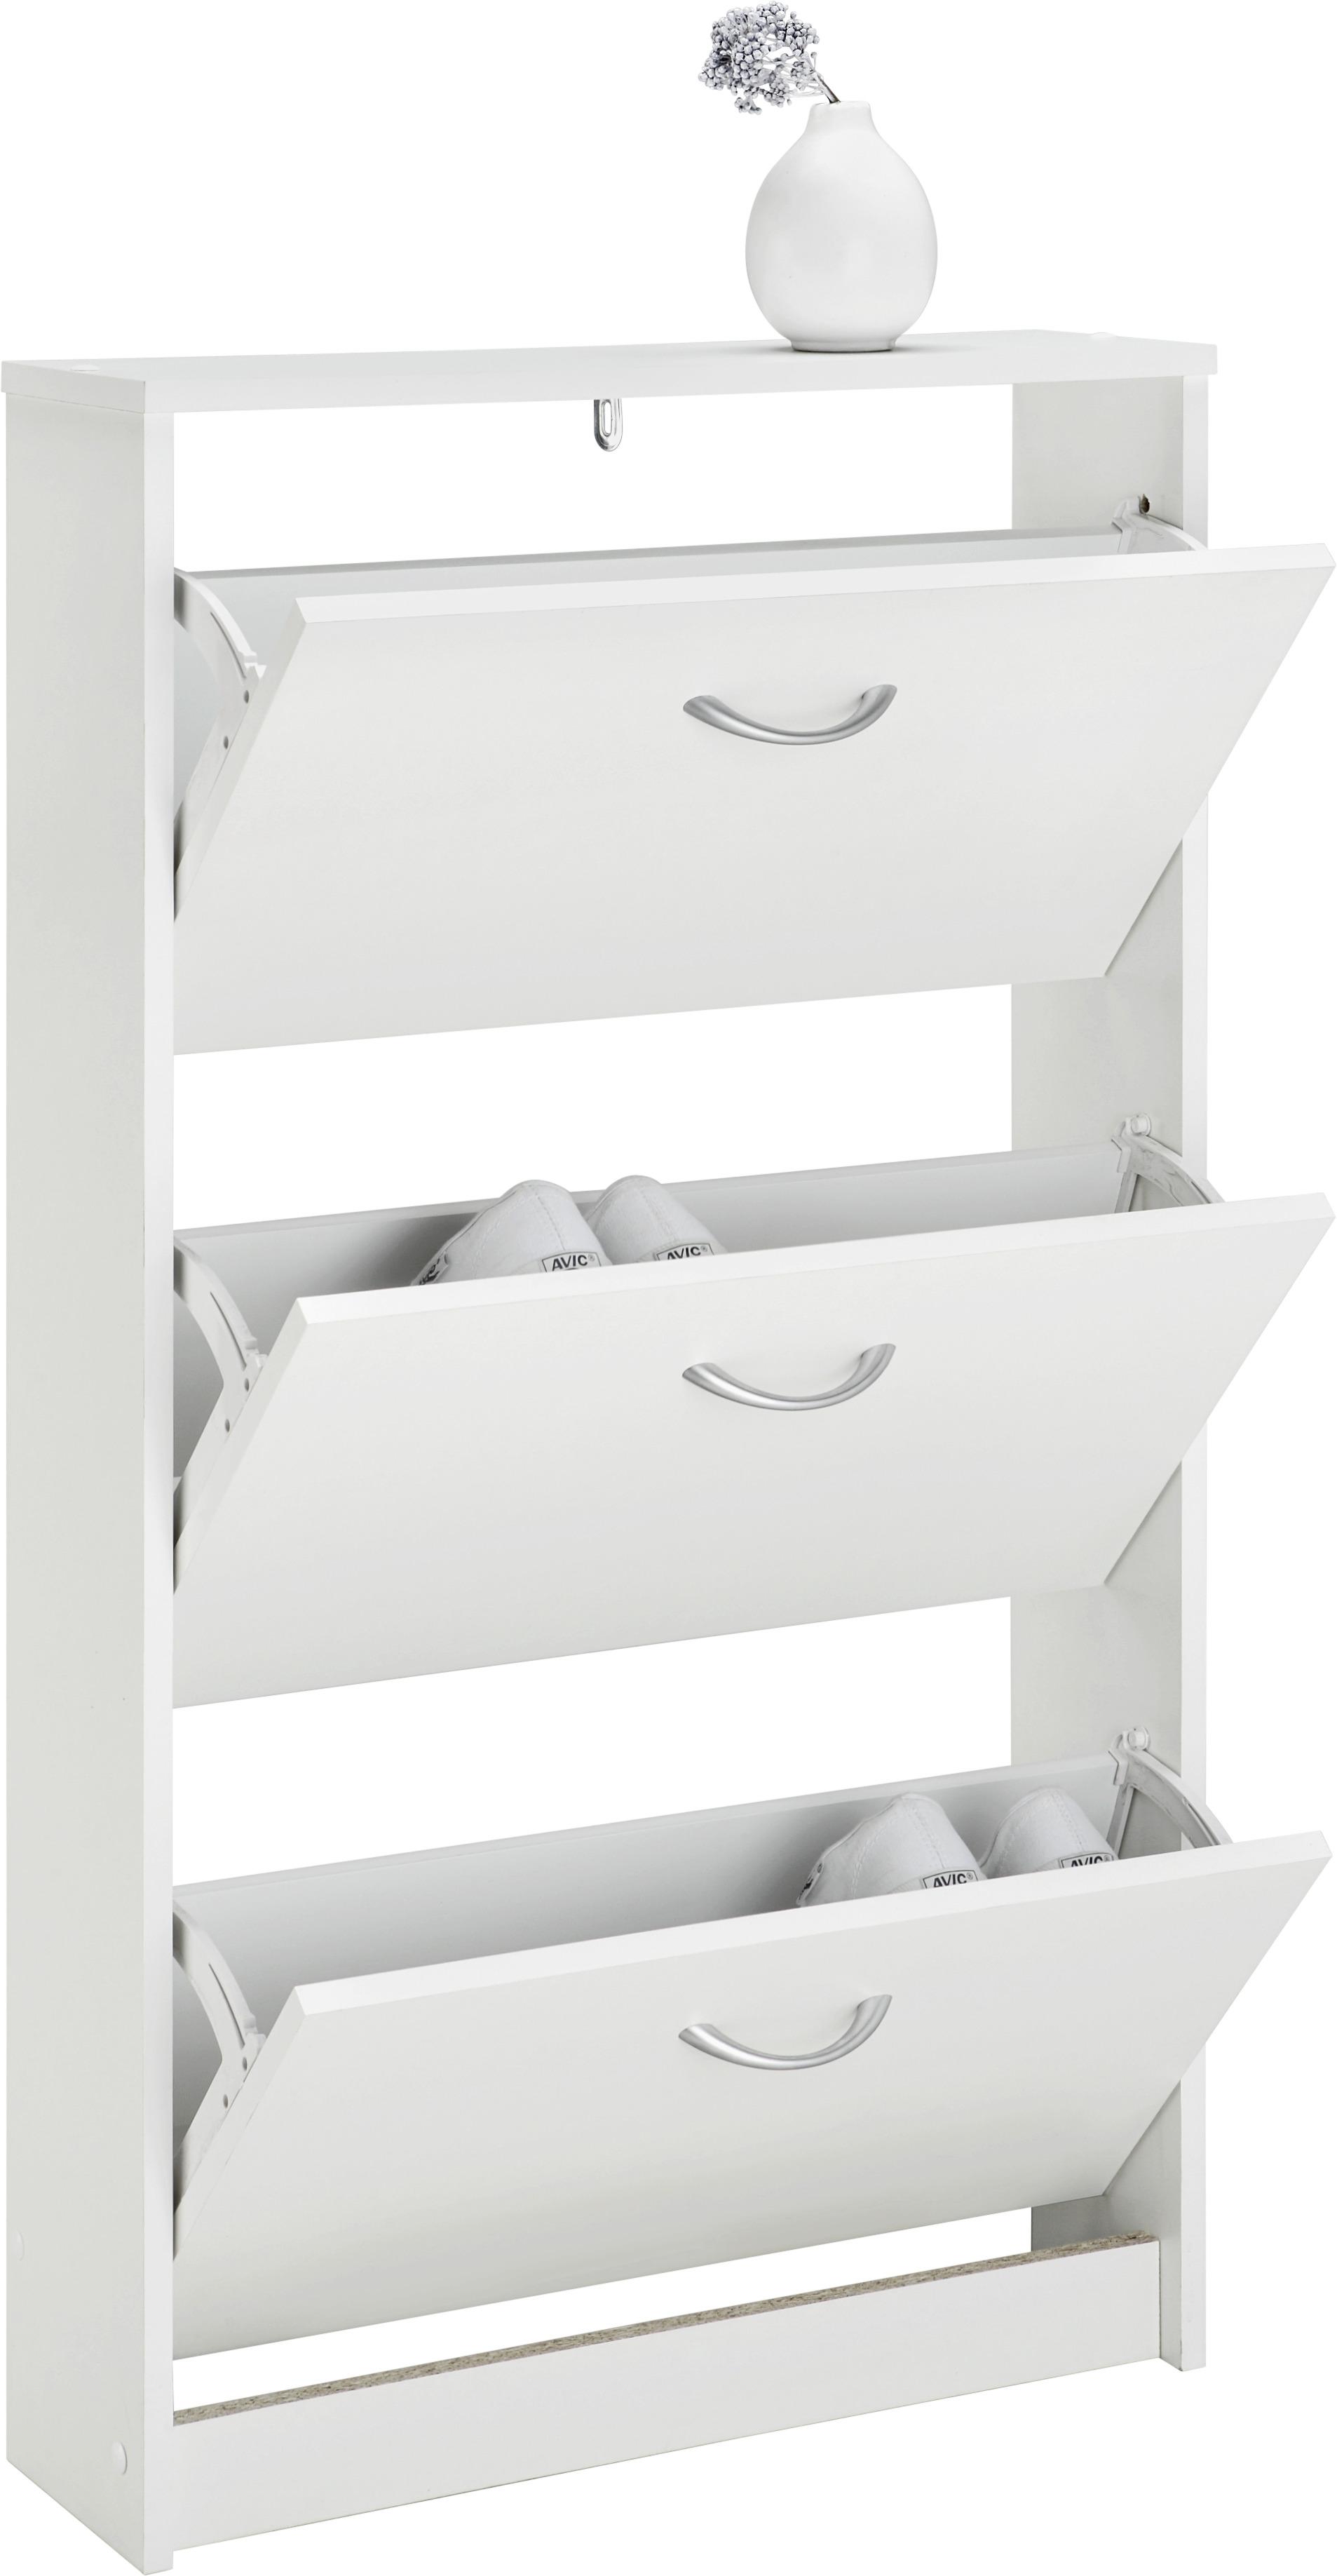 Schuhkipper in Weiß - Silberfarben/Weiß, Holzwerkstoff/Kunststoff (59/105/17cm) - Based